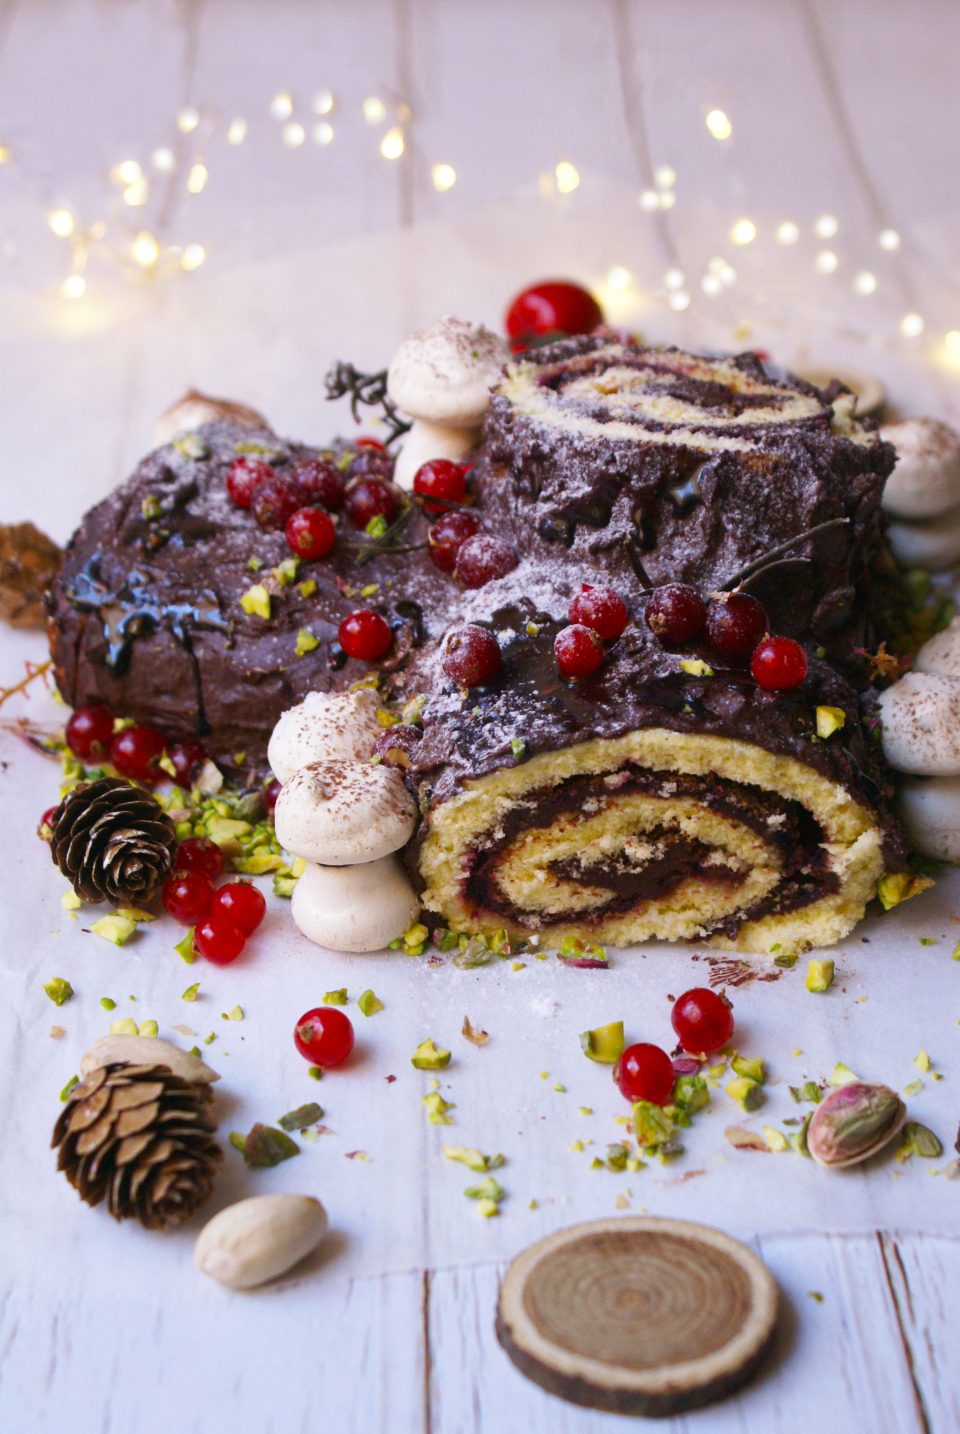 Tronchetto di Natale senza glutine ricoperto di ganache al cioccolato, zucchero a velo e ribes rosso